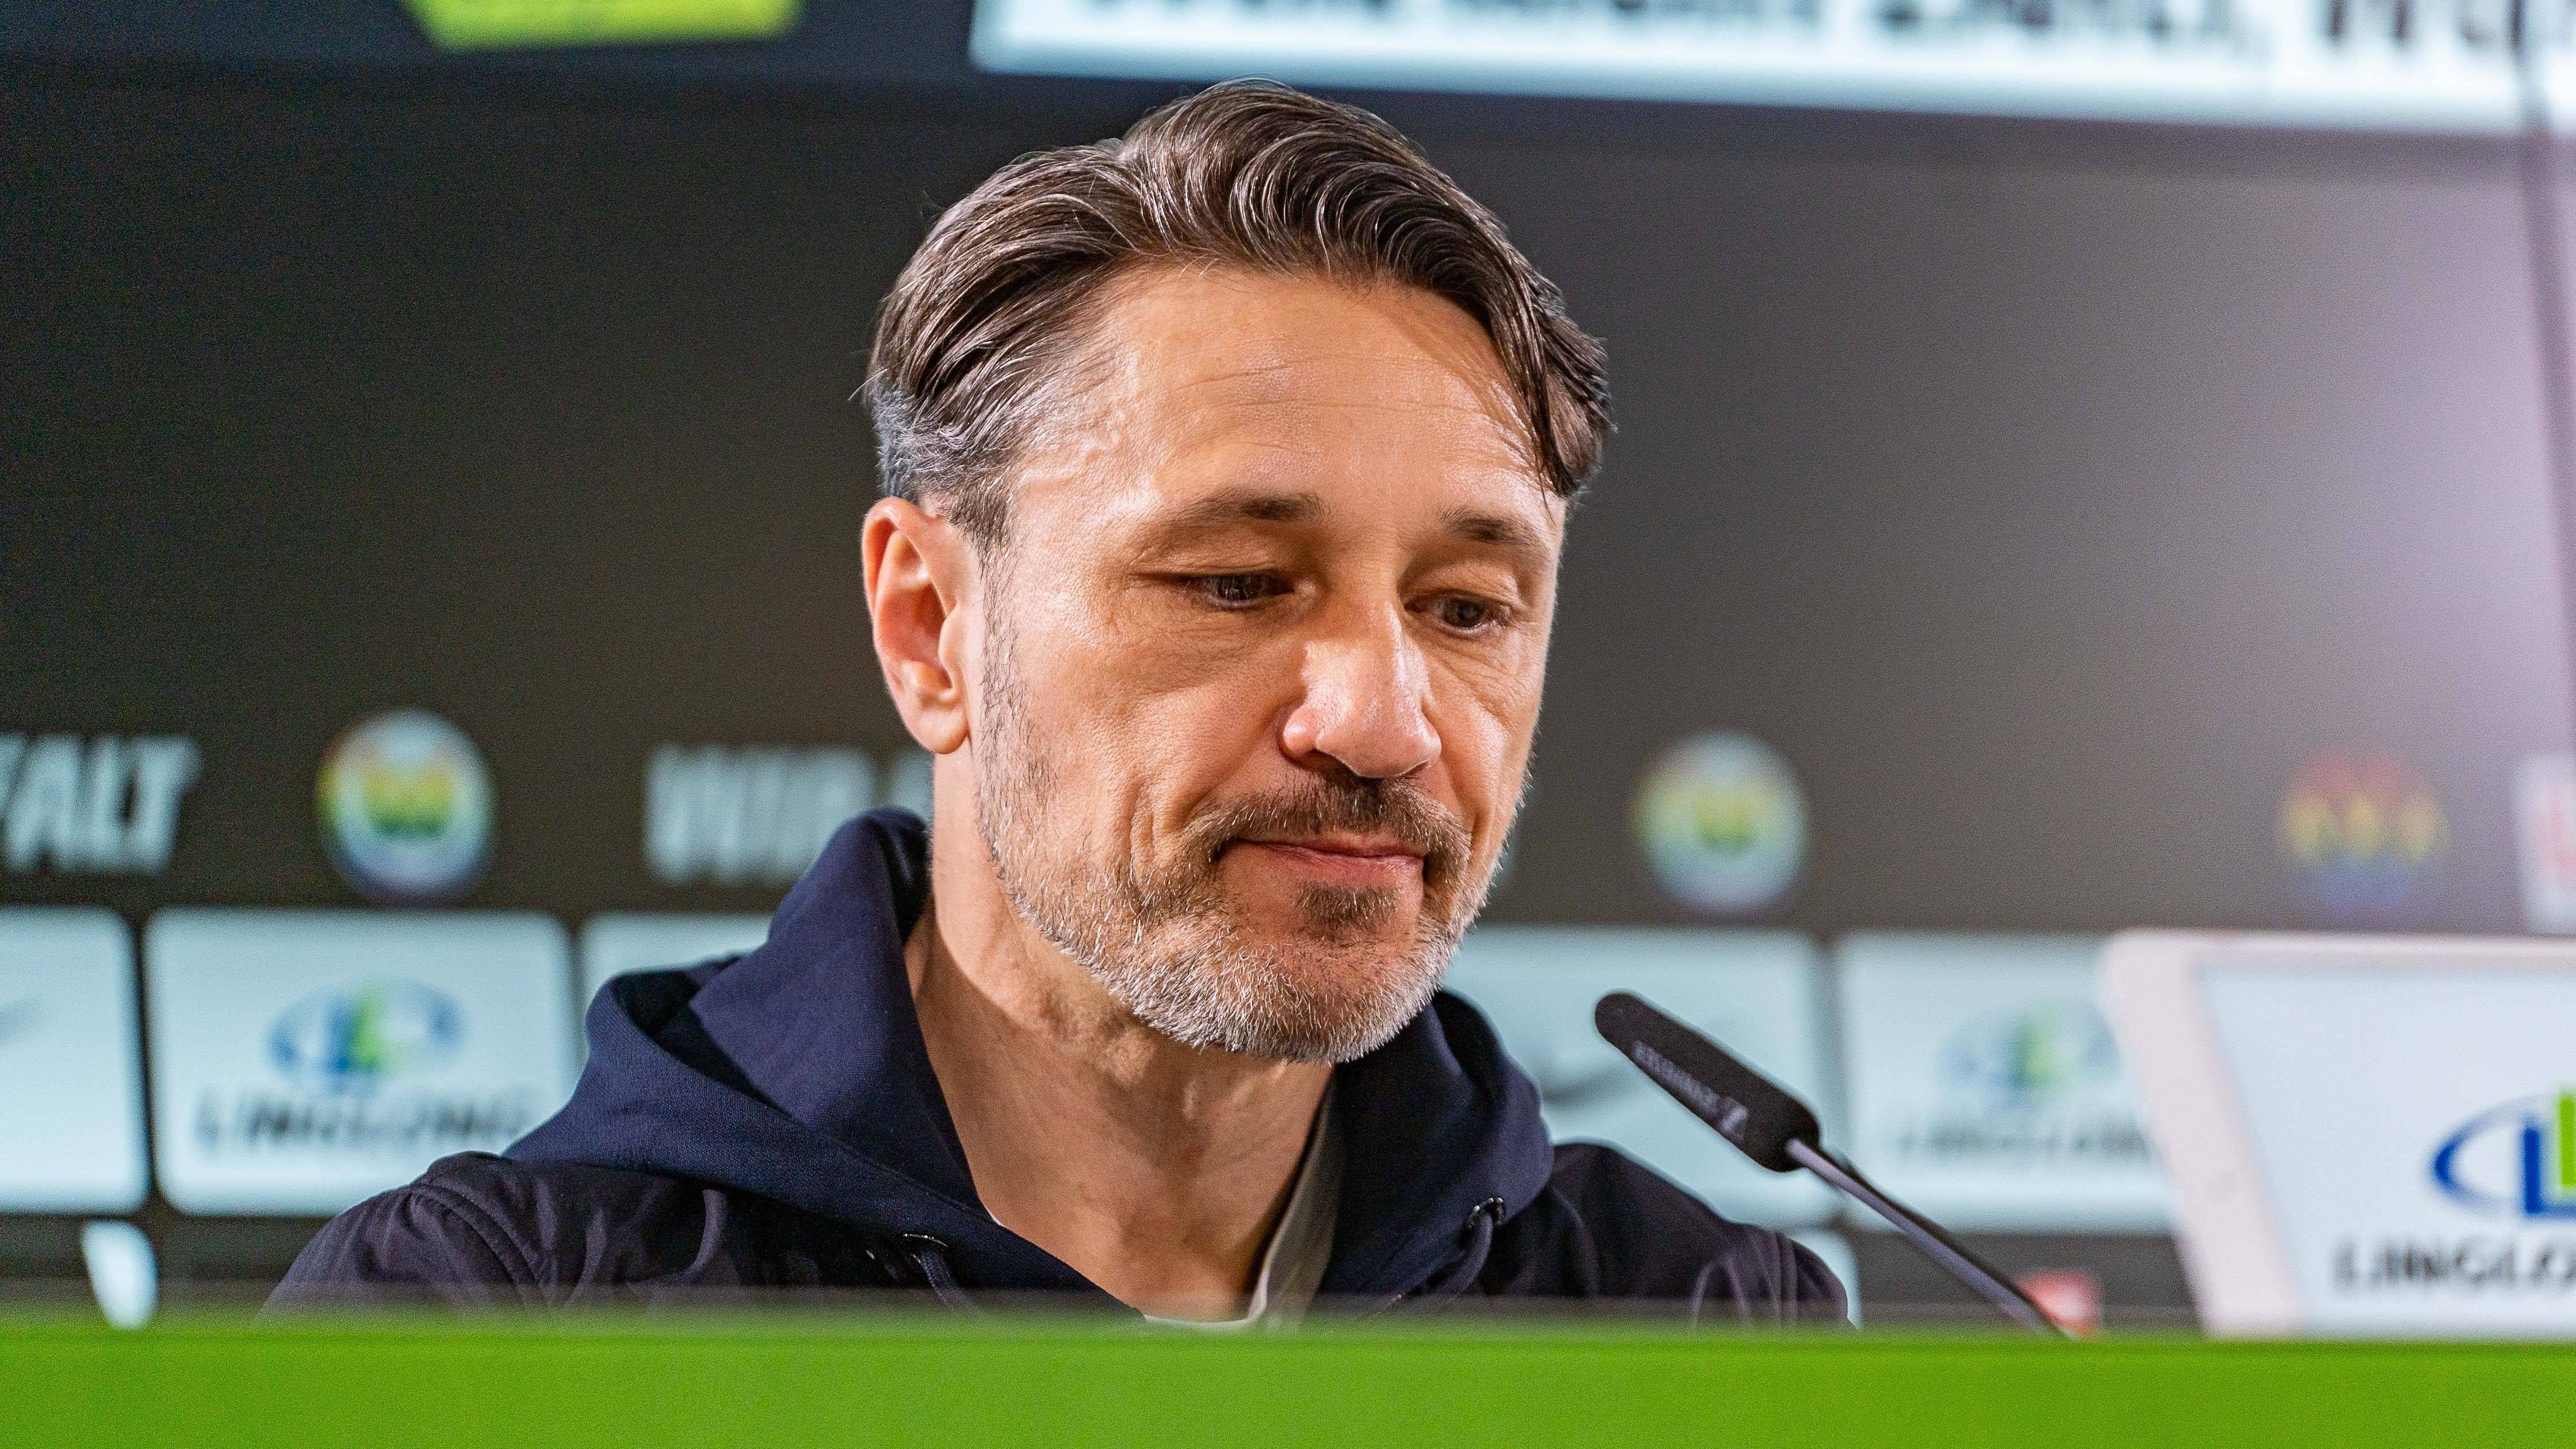 <strong>Niko Kovac</strong><br>Nach der Niederlage gegen den FC Augsburg war für Nico Kovac Schluss beim VfL Wolfsburg. Sein Nachfolger Ralph Hasenhüttl wurde bereits vorgestellt. Dass es den 52-jährigen Kovac nach Freiburg zieht, ist unwahrscheinlich, aber nicht ausgeschlossen. Seine Vita aus der Vergangenheit und Bundesliga-Erfahrung sprechen für Kovac.